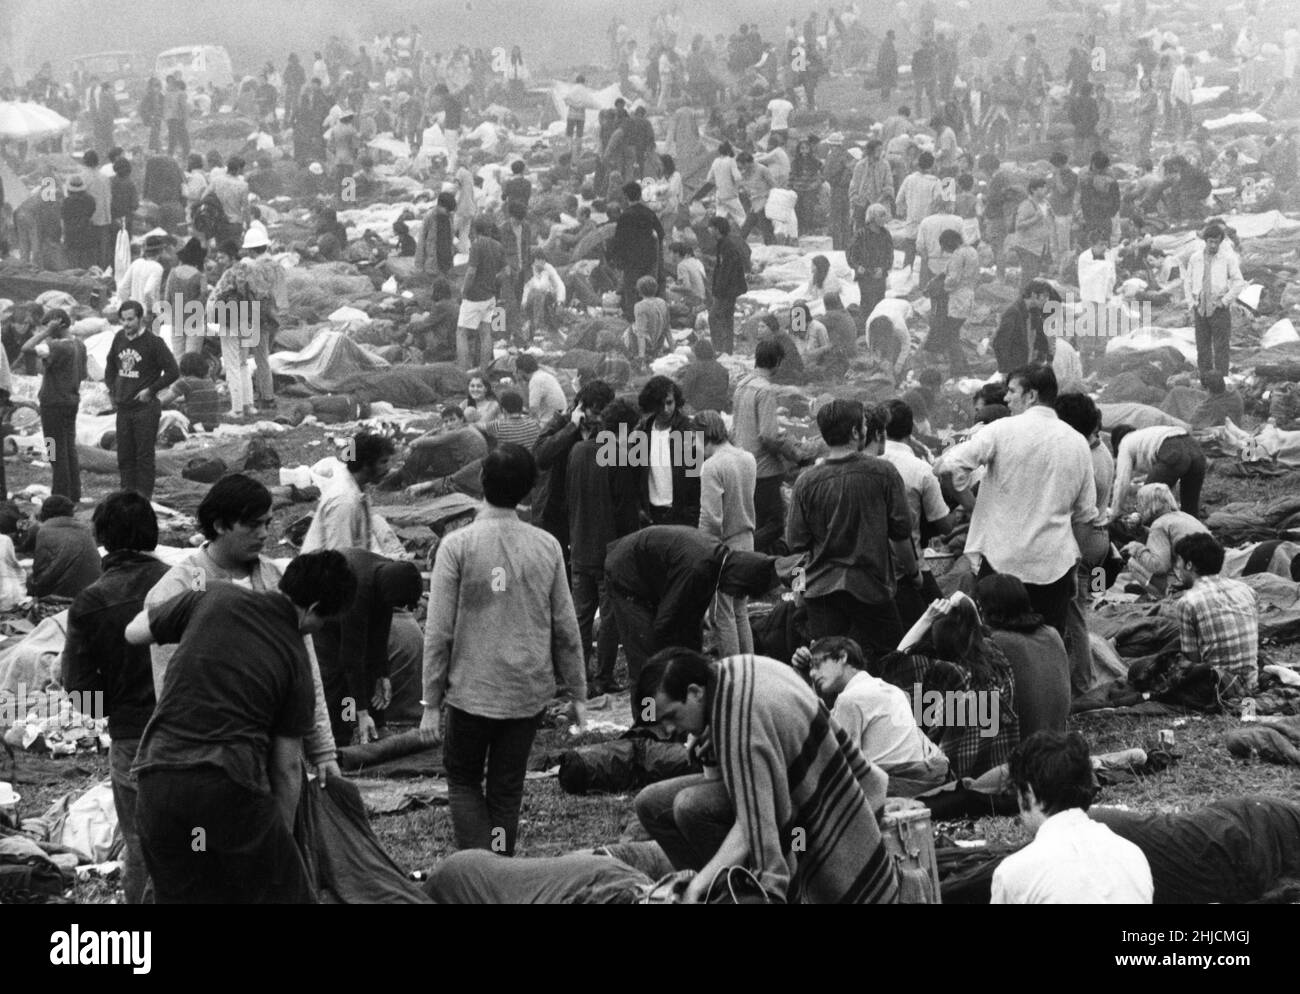 Das Woodstock Music and Art Festival, ein berühmtes Rockfestival, das vom 15. Bis 17. August 1969 auf einer Milchfarm in Bethel, New York, stattfindet. Stockfoto